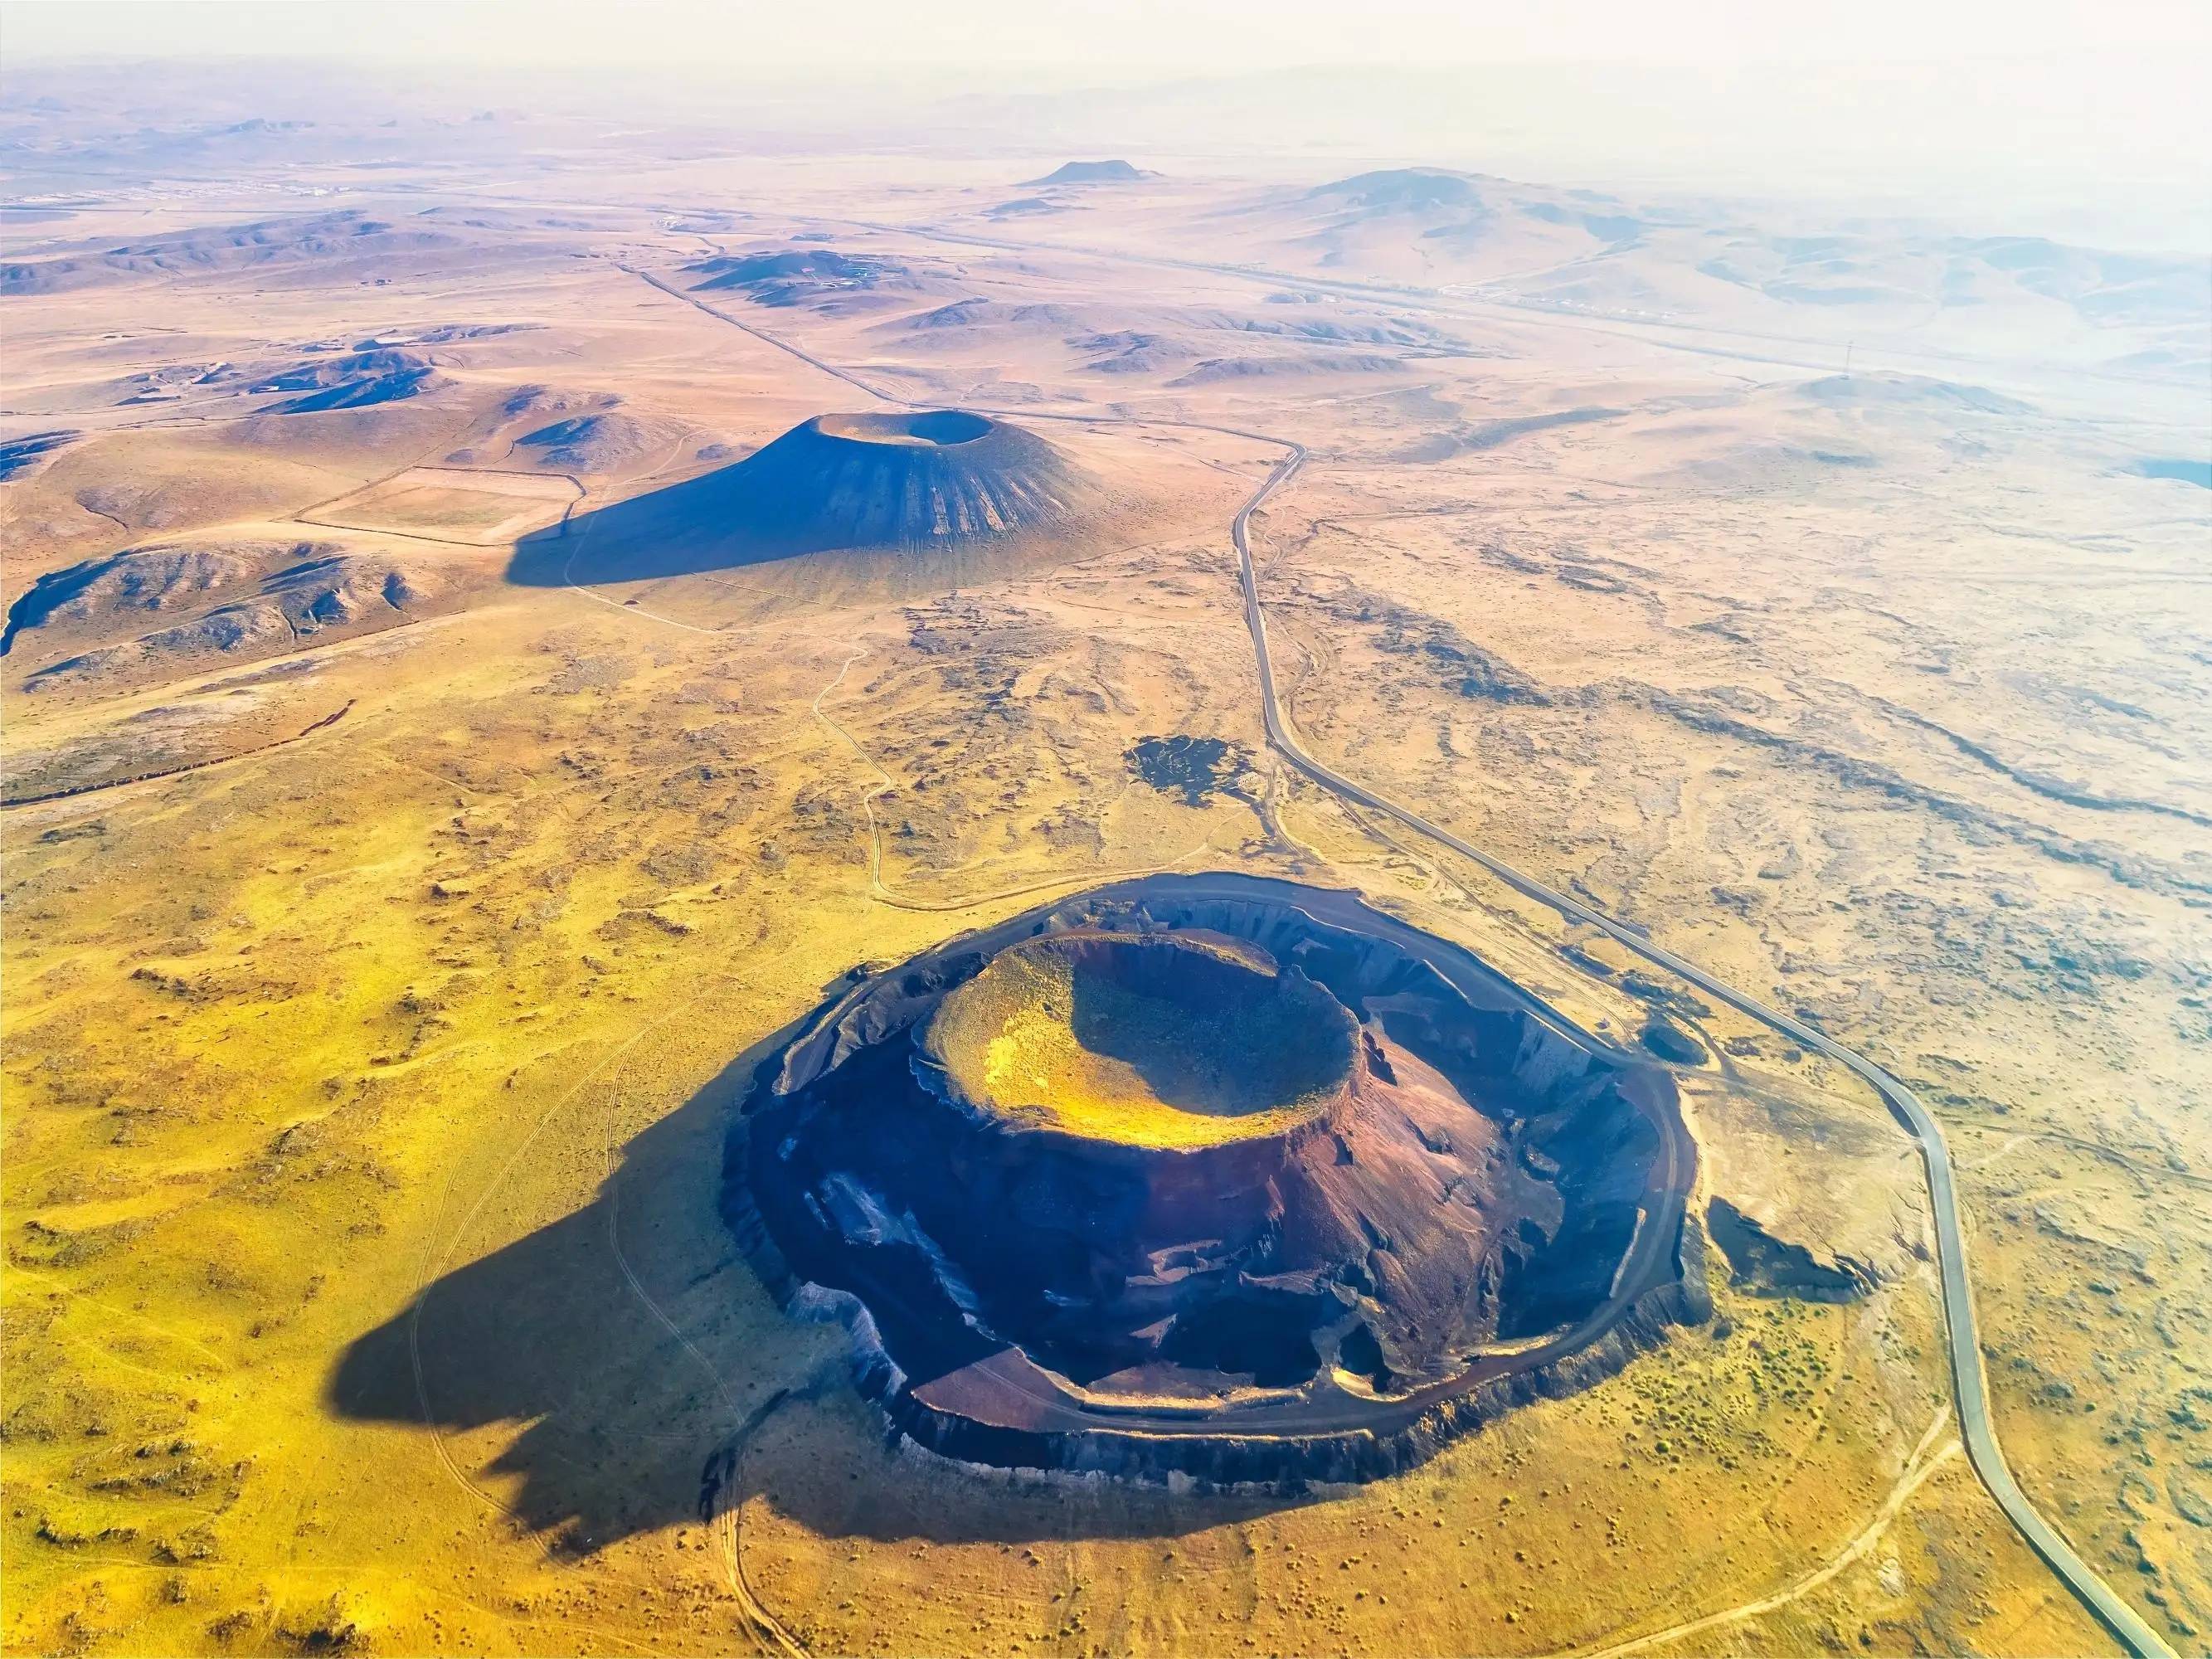 乌兰哈达火山地质公园位于内蒙古自治区乌兰察布市察右后旗乌兰哈达